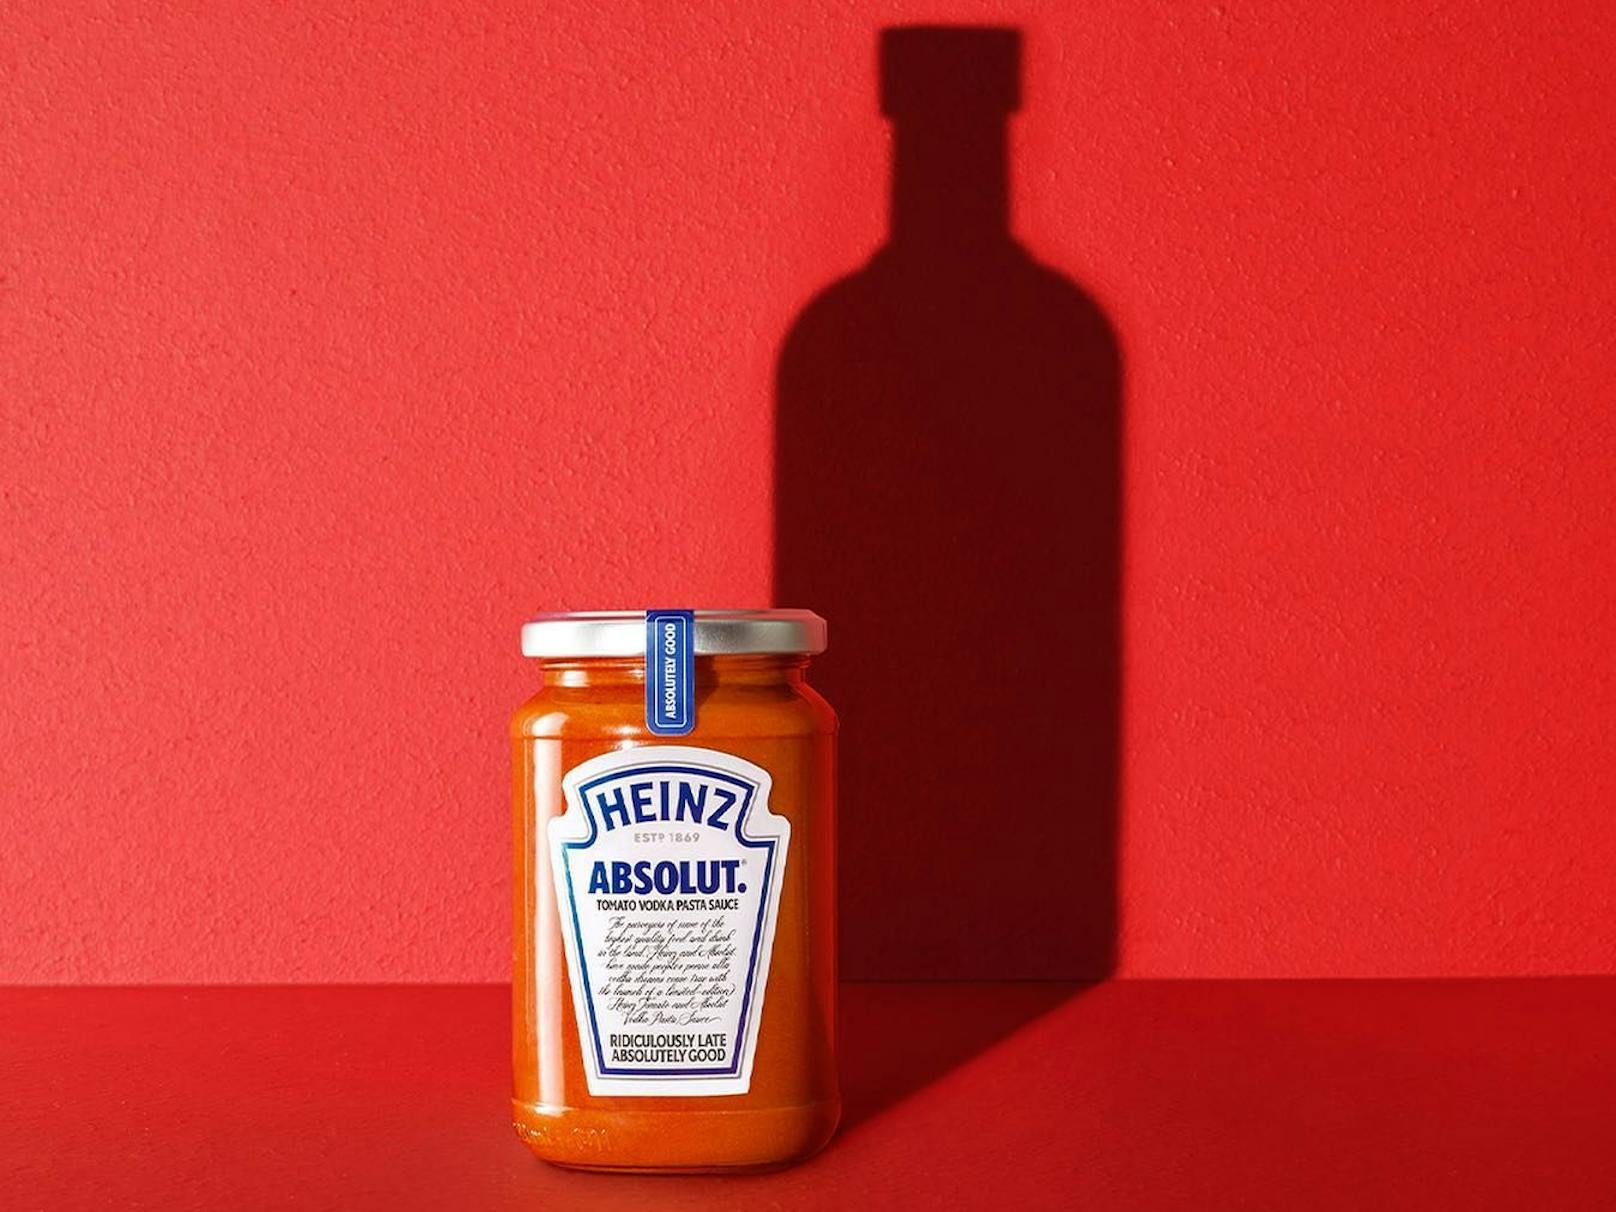 "Der Wodka ist der Zauber, der den Geschmack und das Aroma dieser reichhaltigen und cremigen Tomaten-Basilikum-Käse-Sauce entfaltet" , so ein Statement von Heinz.